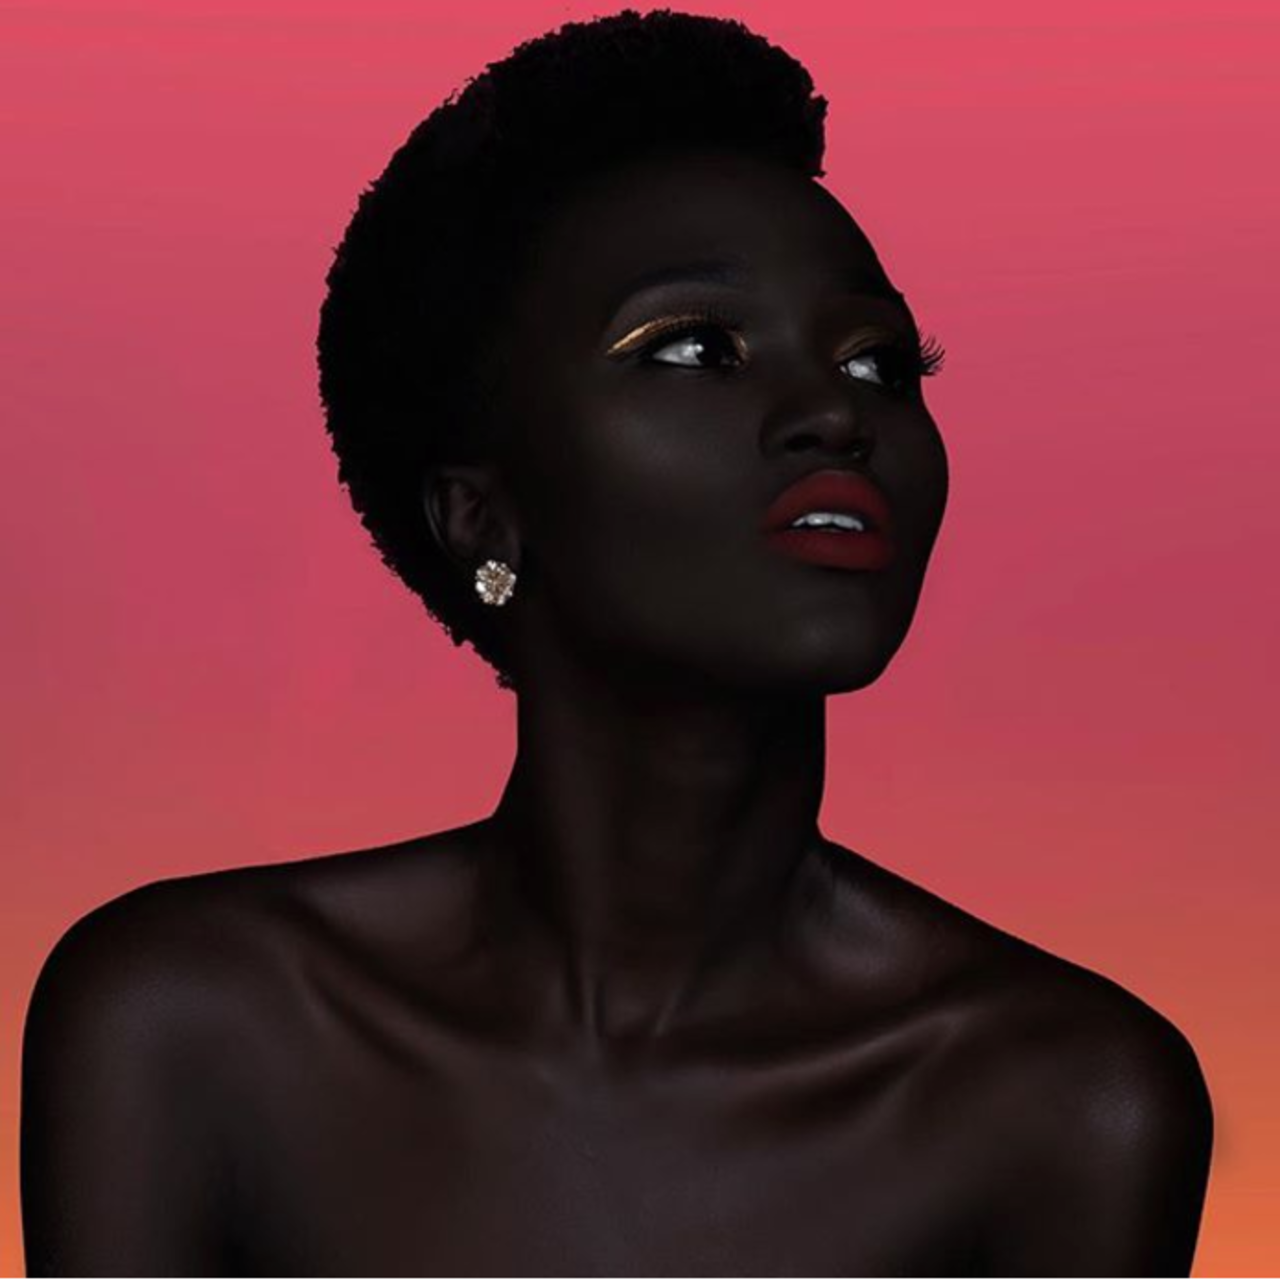 Кожа негритянок. Няким Гатвеч. Королева тьмы - Ньяким Гатвех - модель из Южного Судана. Няким Гатвех - "Королева тьмы" из Южного Судана. Ньяким Гатвеч модель.